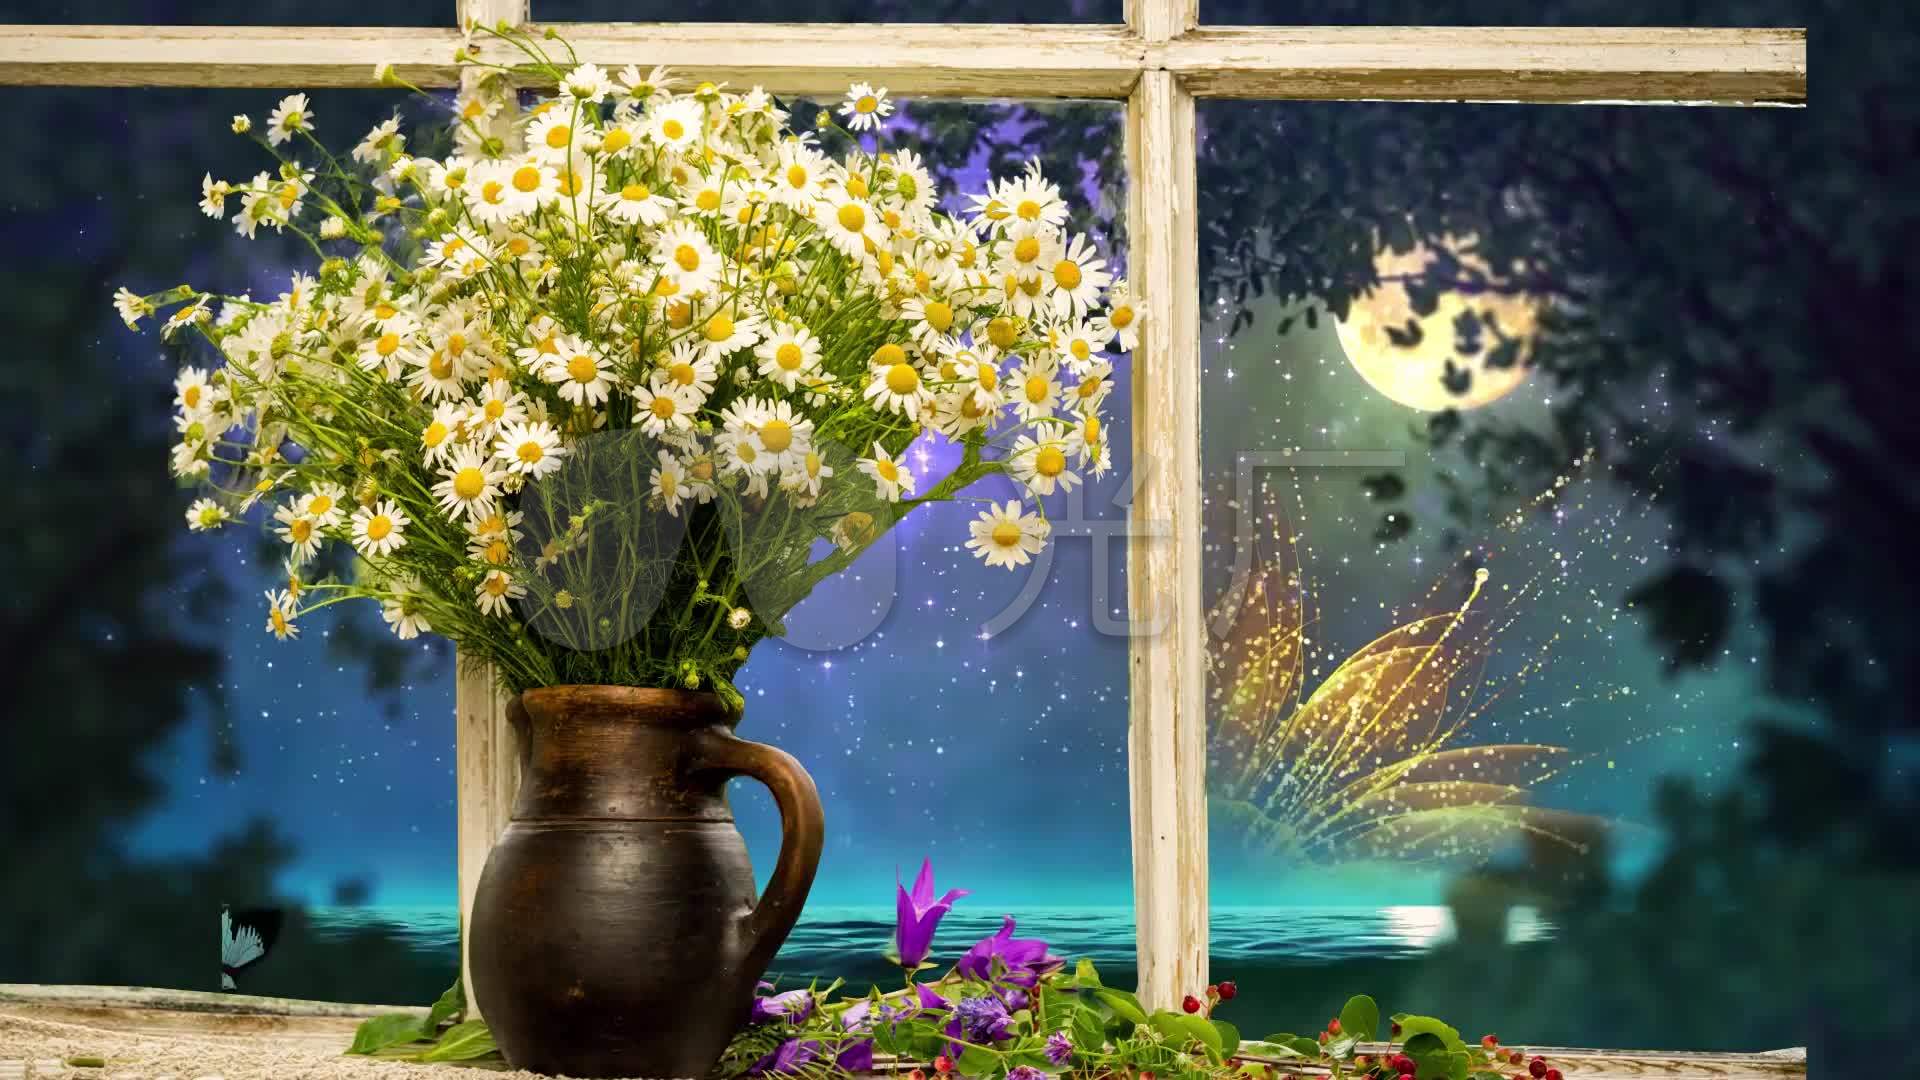 唯美窗台花卉窗外夜色蝴蝶飞舞